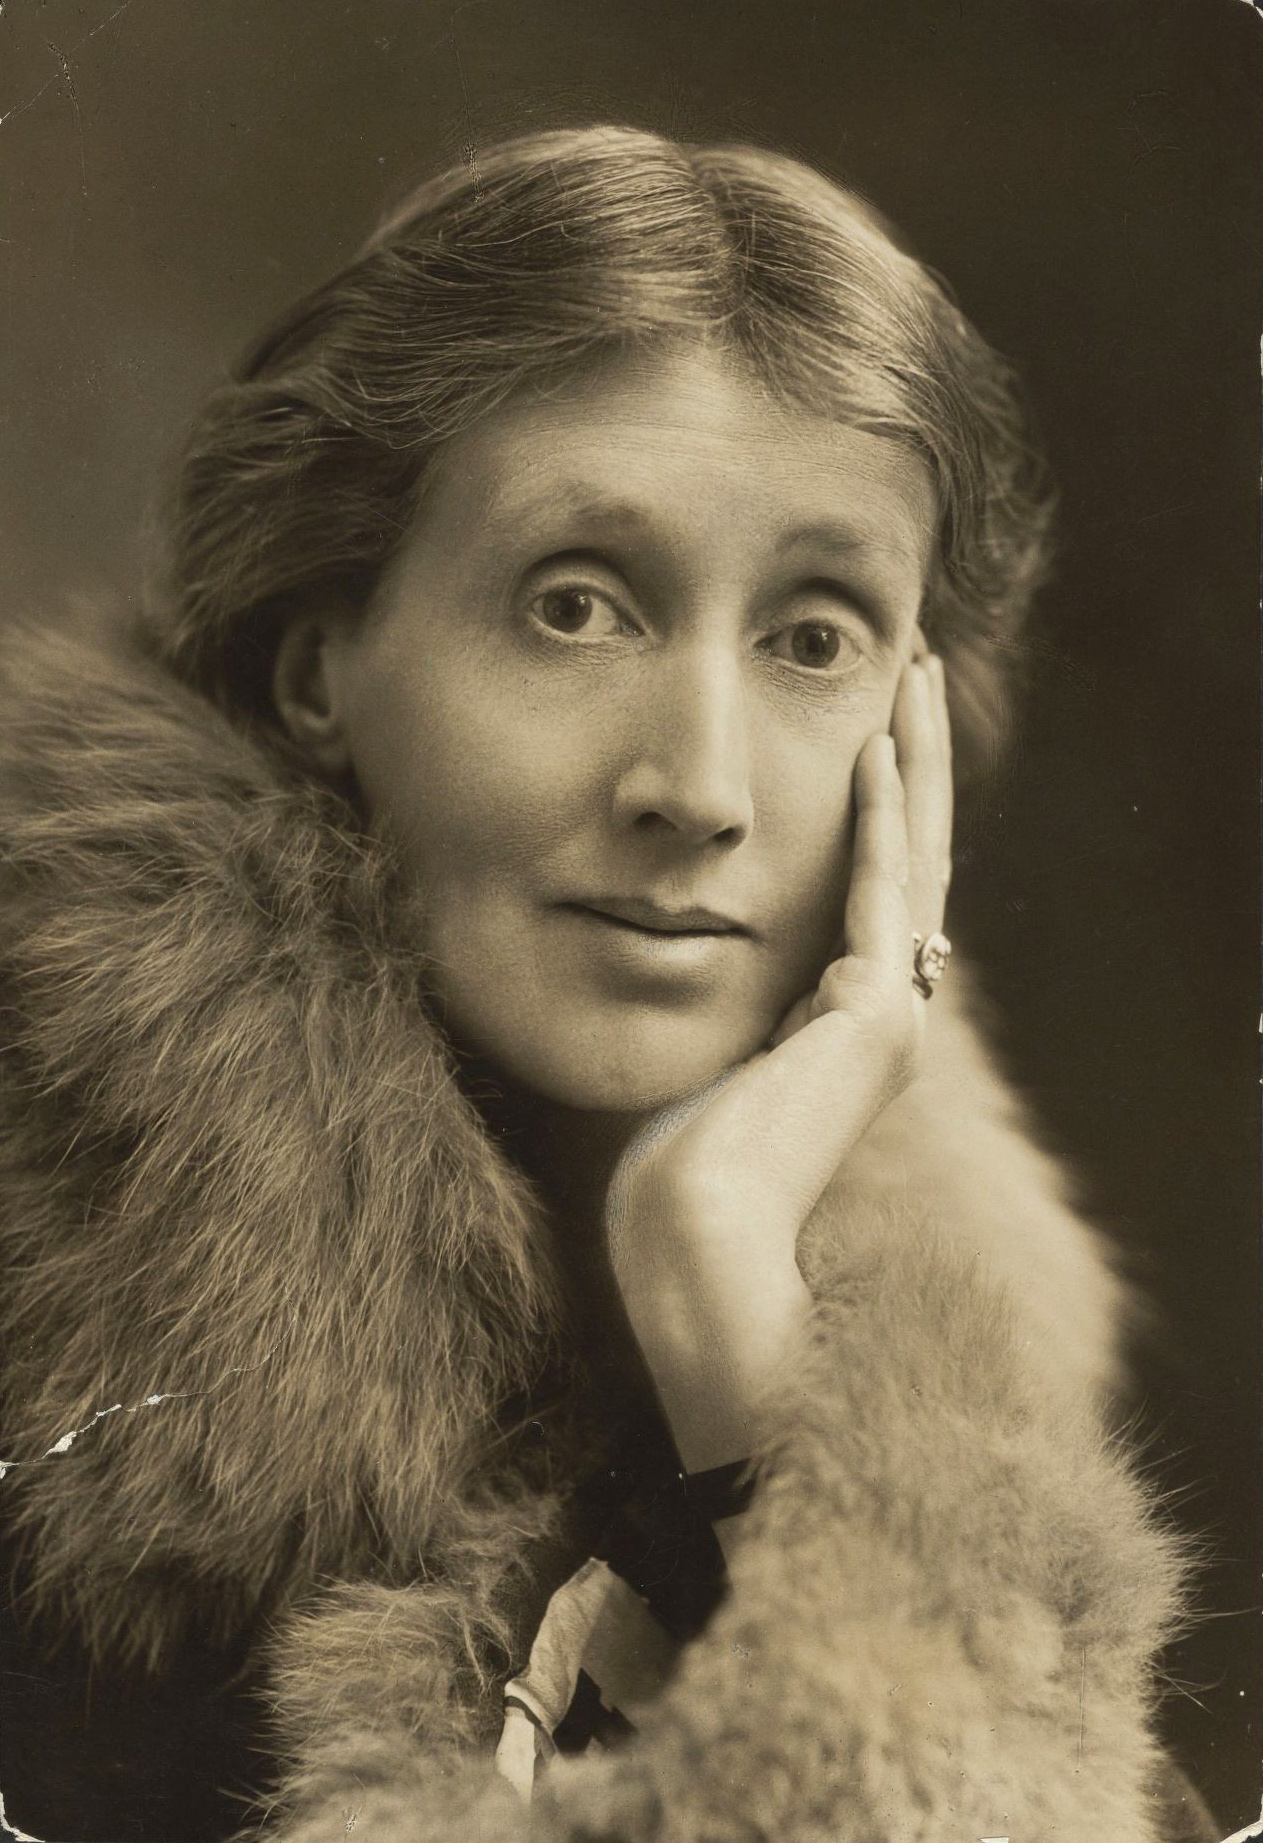 auteur Virginia Woolf de la citation Les femmes ont servi tous ces siècles comme des verres à l'aspect possédant le pouvoir de refléter la figure de l'homme à deux fois sa taille naturelle.